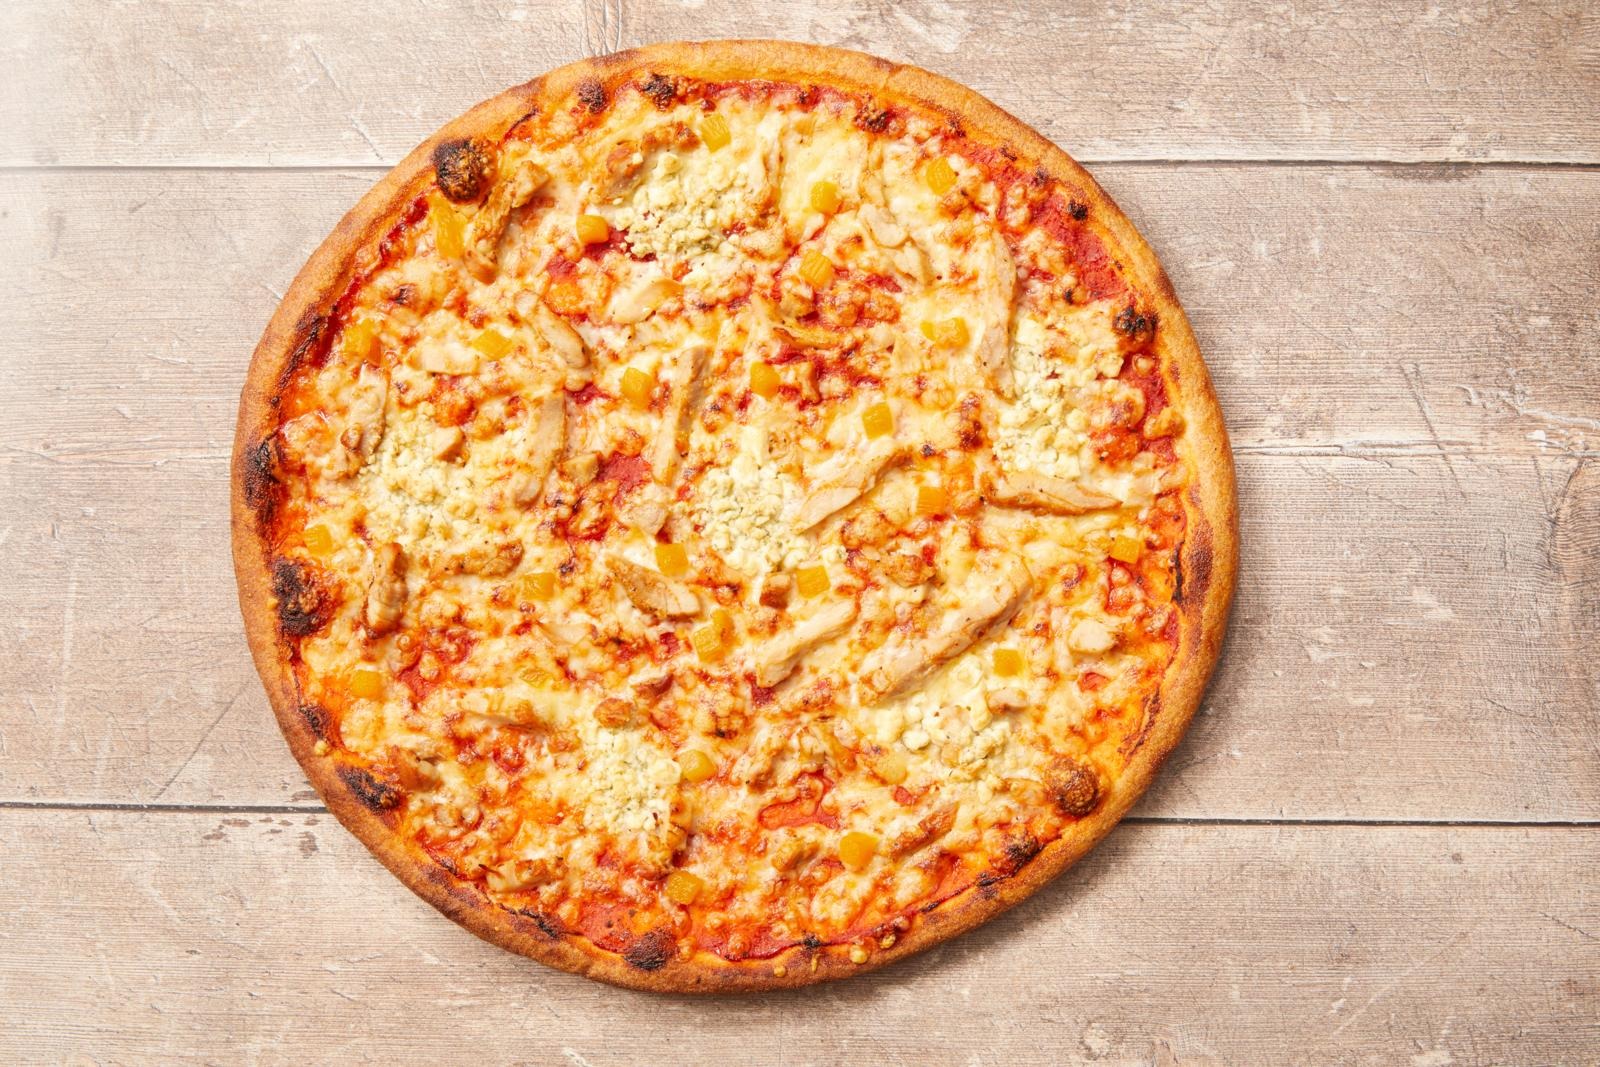 Arki-illan fiestabuffa | Pizza & Buffa Prisma, Kouvola 